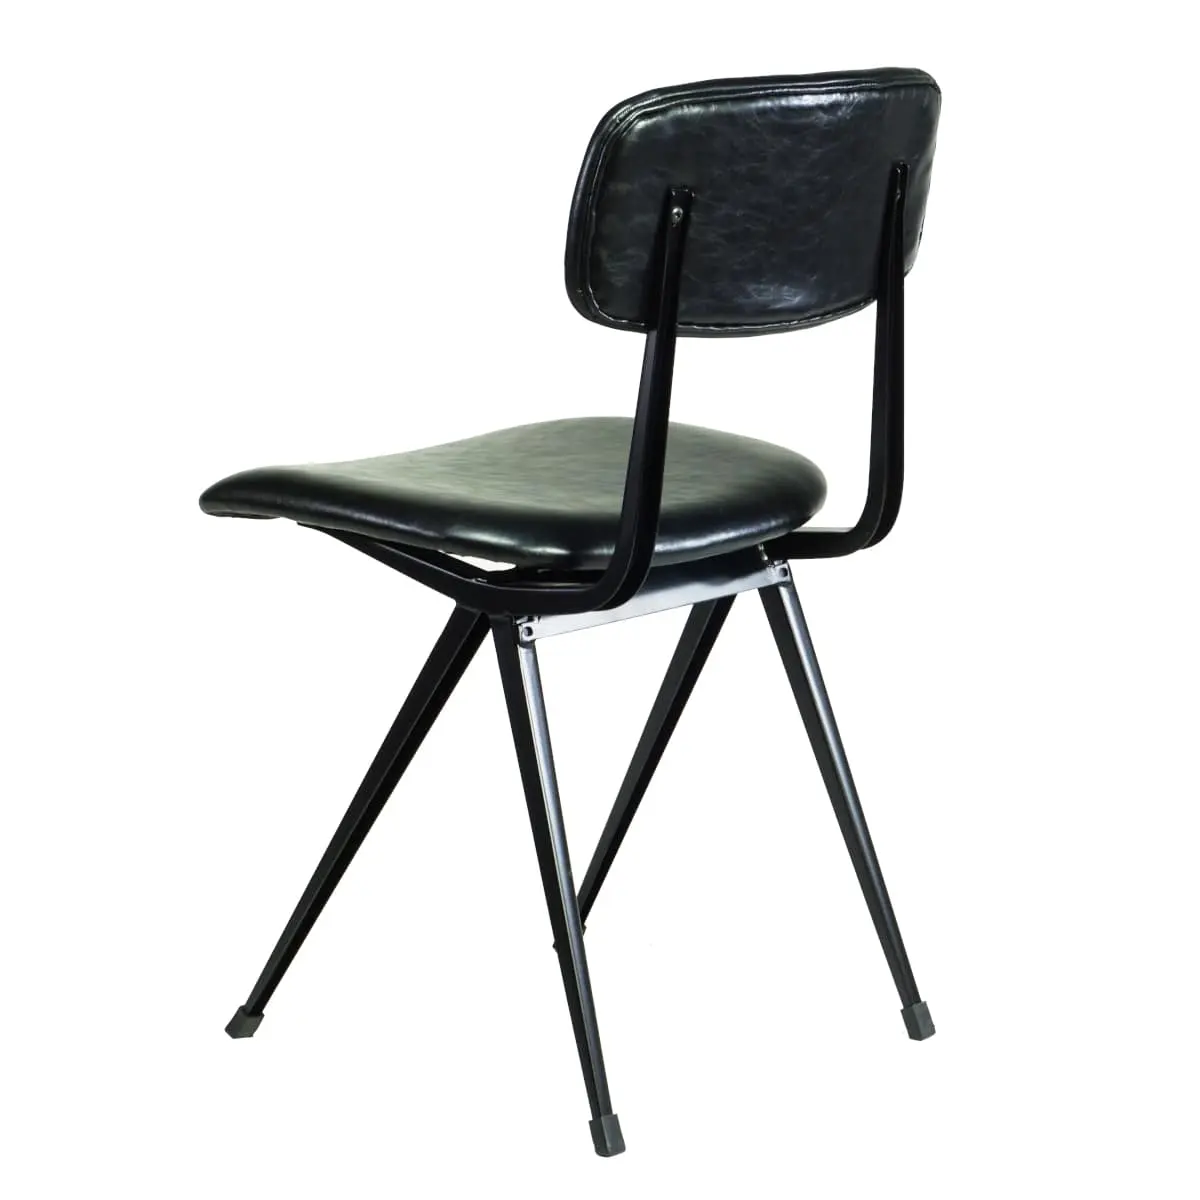 Schwarzer Old School Chair nach Friso Kremer, gepolstert